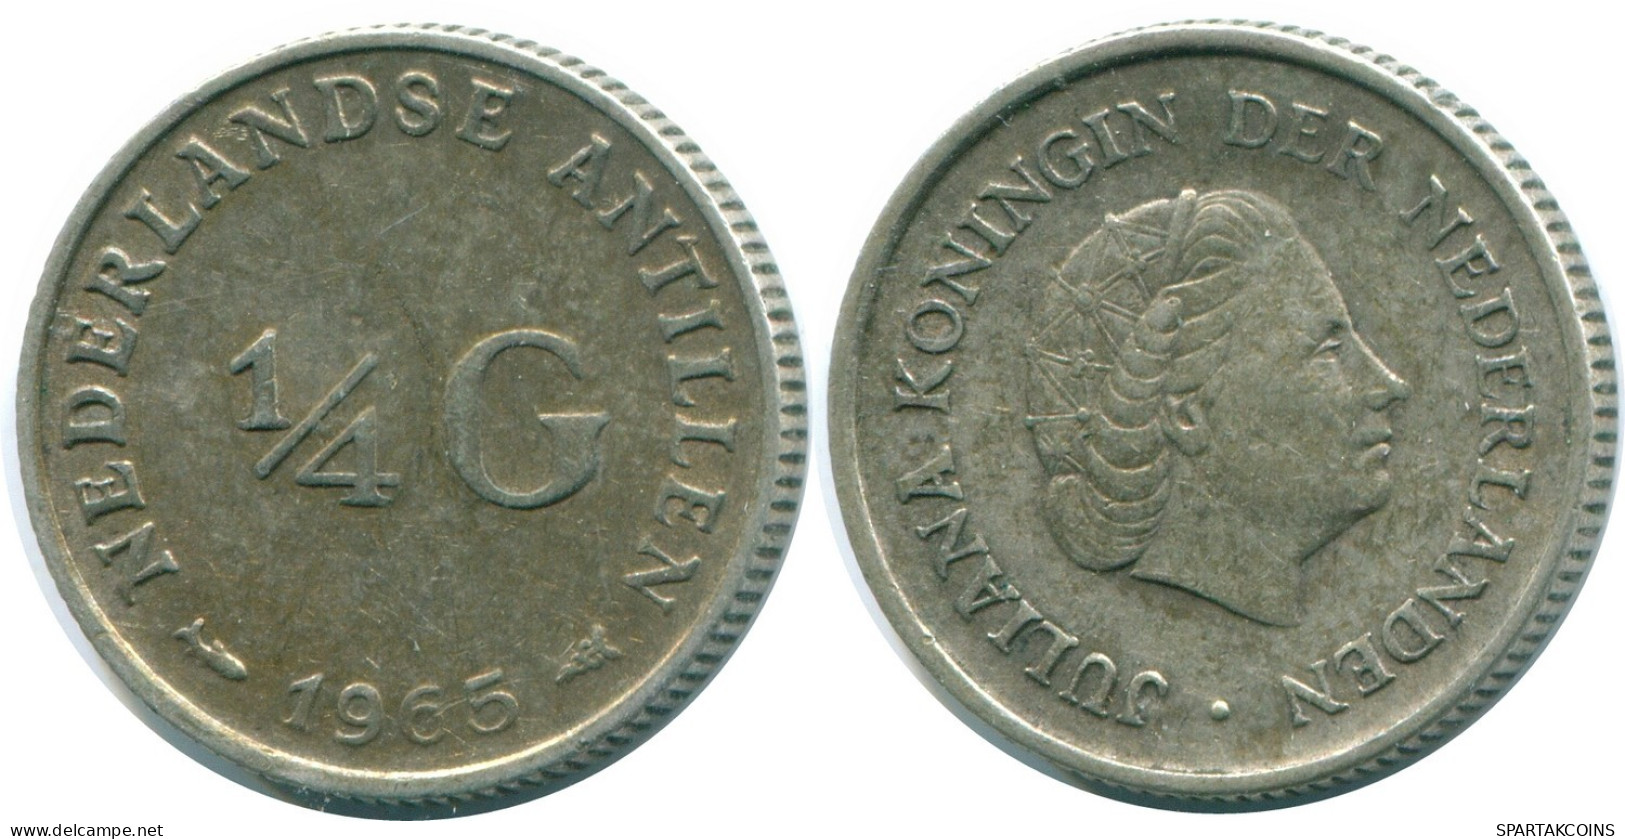 1/4 GULDEN 1965 NIEDERLÄNDISCHE ANTILLEN SILBER Koloniale Münze #NL11394.4.D.A - Niederländische Antillen